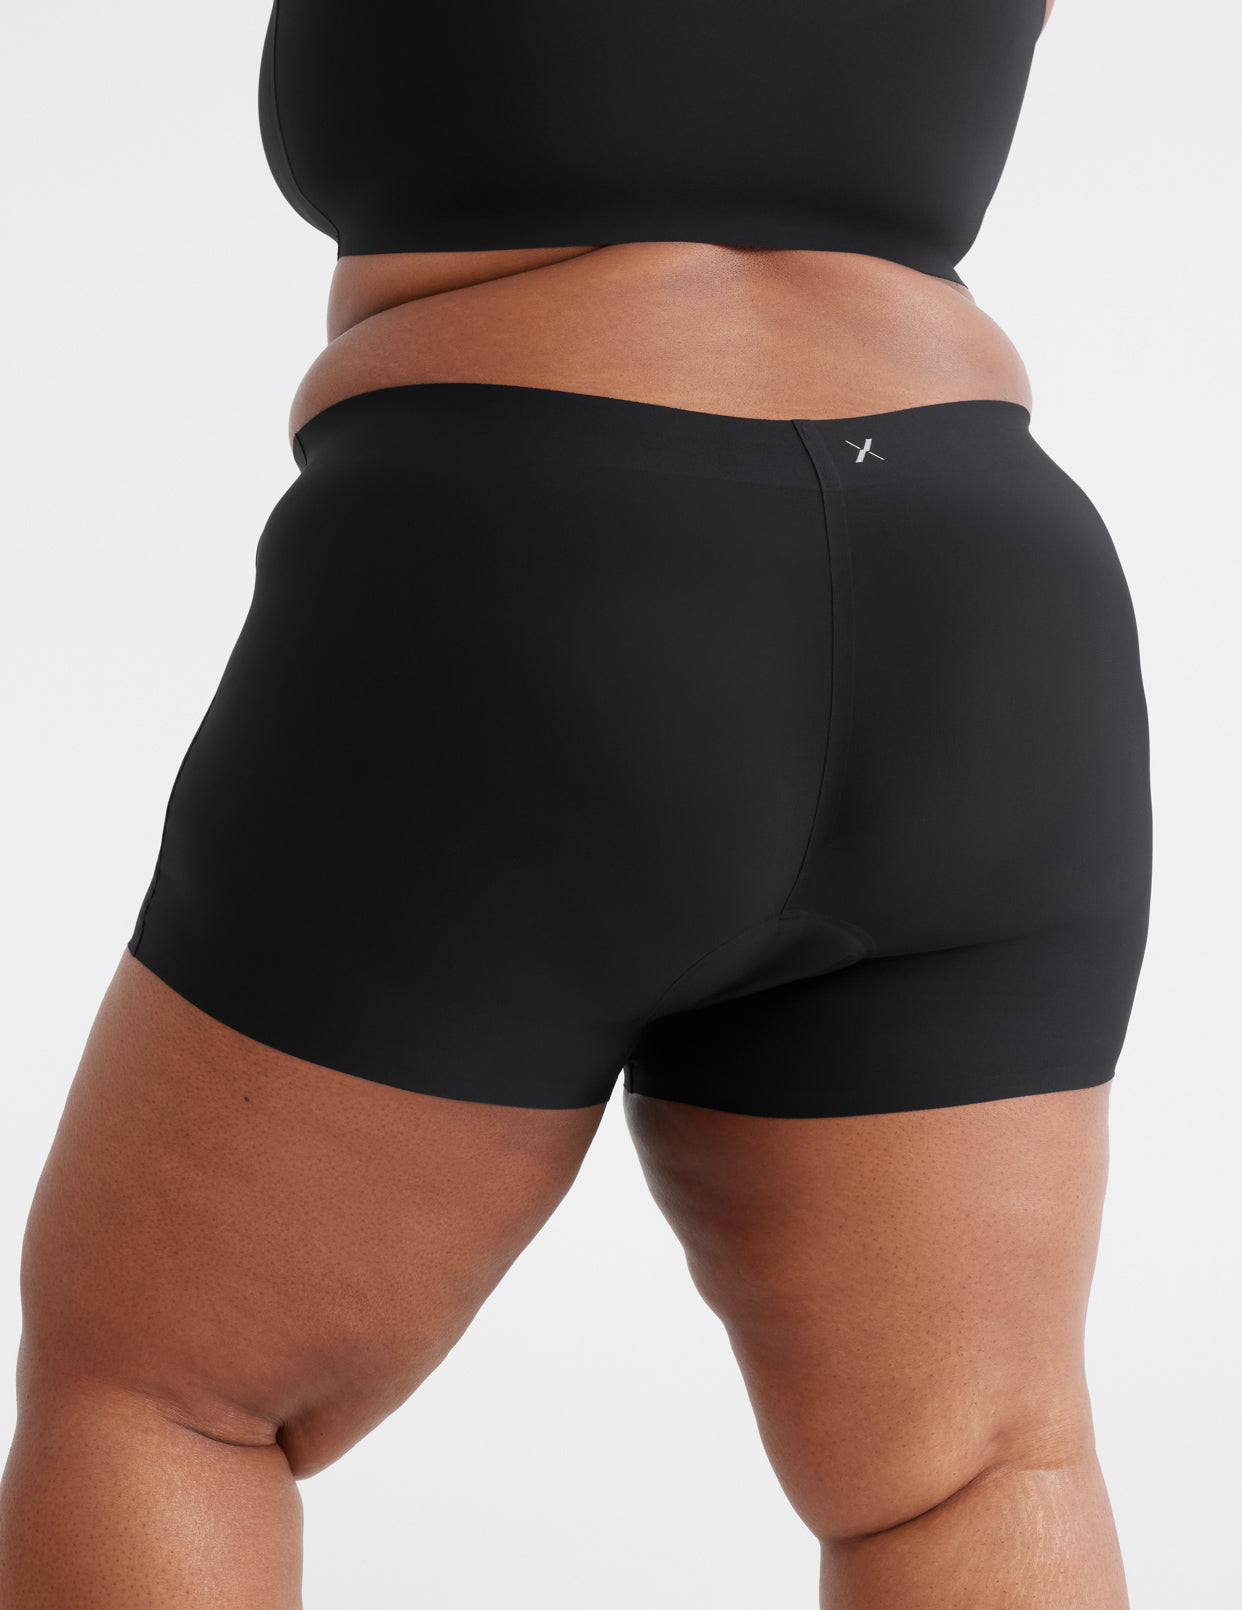 KOTEX Period Underwear XL from 16.90 € - Menstruation Underwear